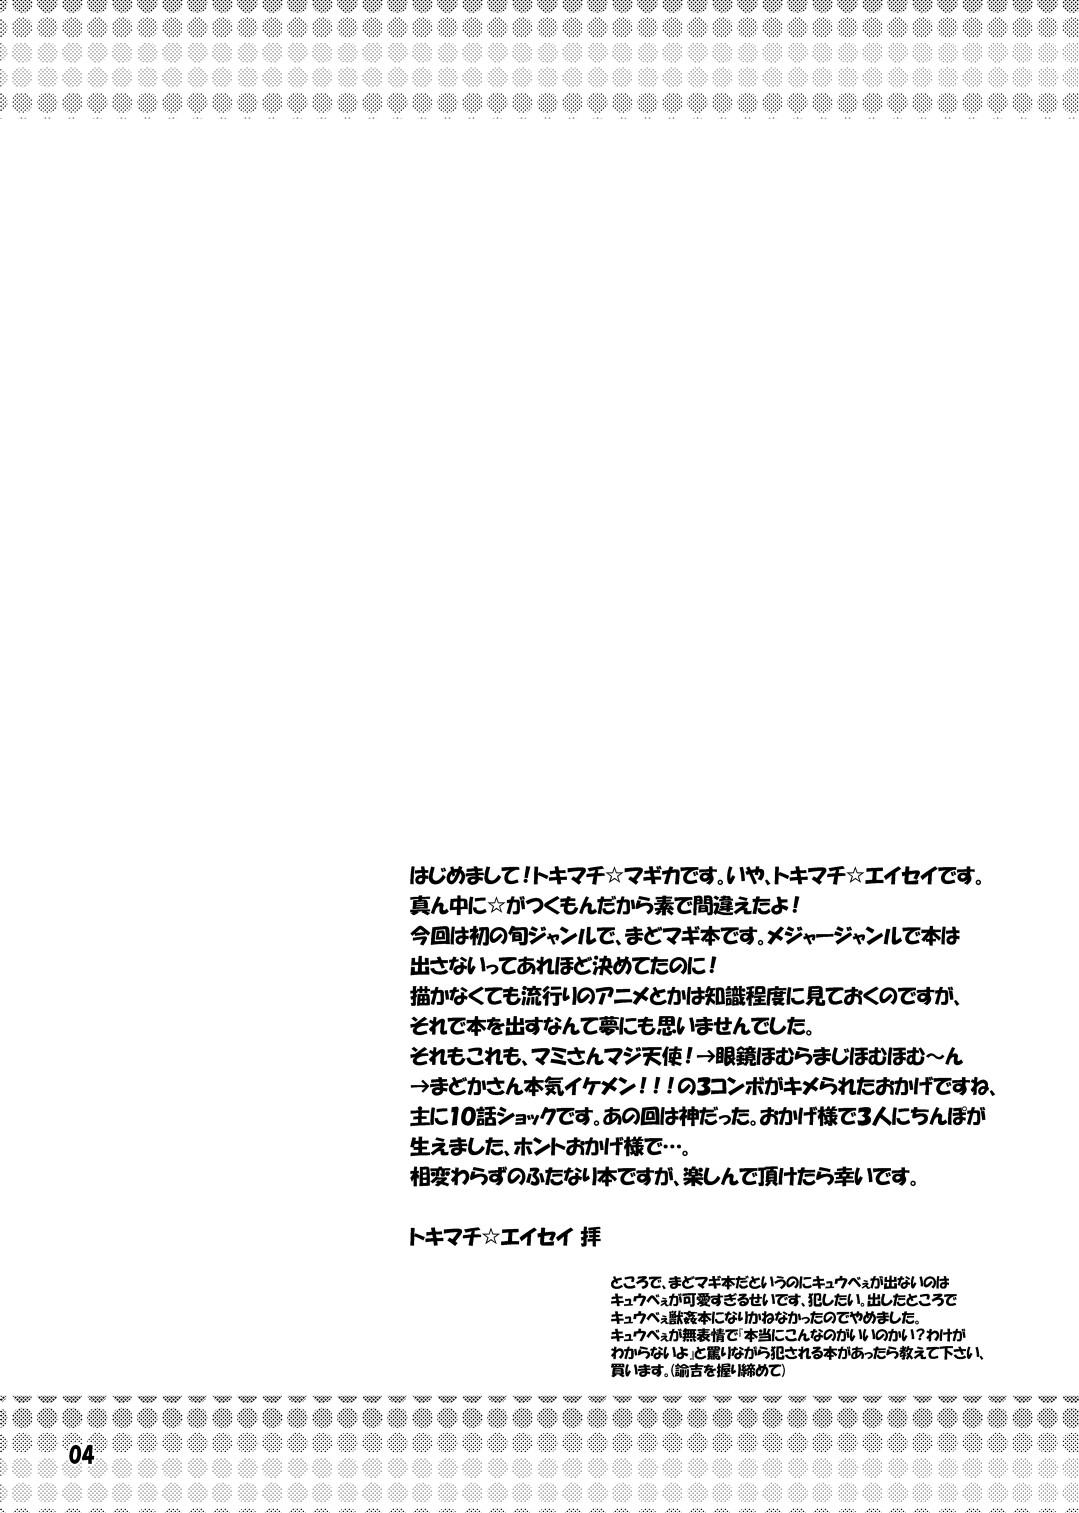 Rabo Futanari Mahou Shoujo Kyouka Kunren - Puella magi madoka magica Chibola - Page 4